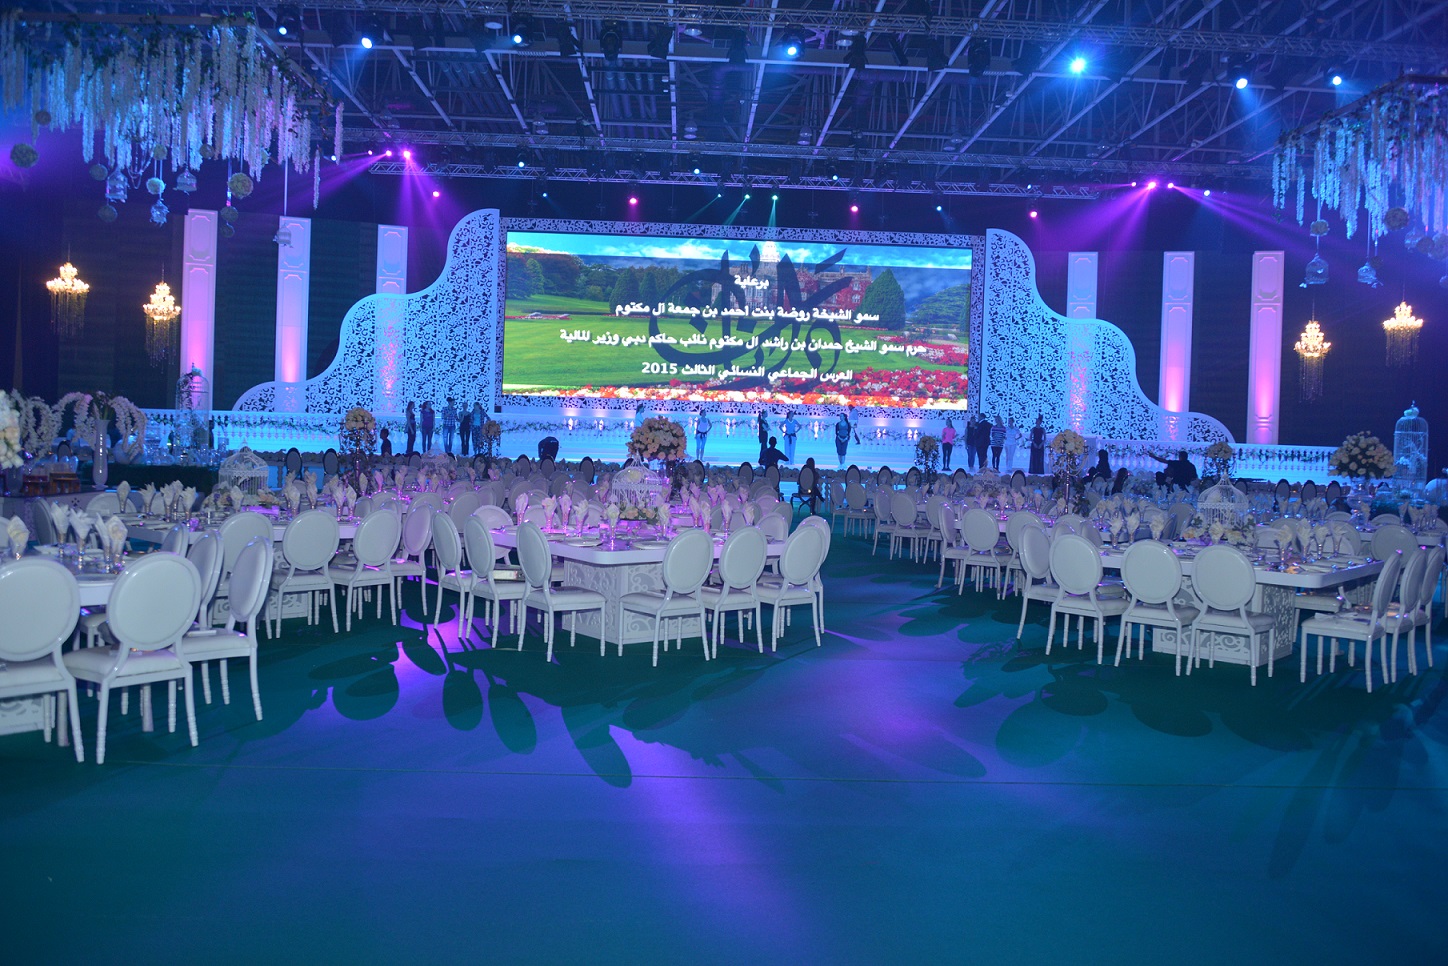 “دانات الإمارات” يزف 110 عرائس بـــعرس جماعي